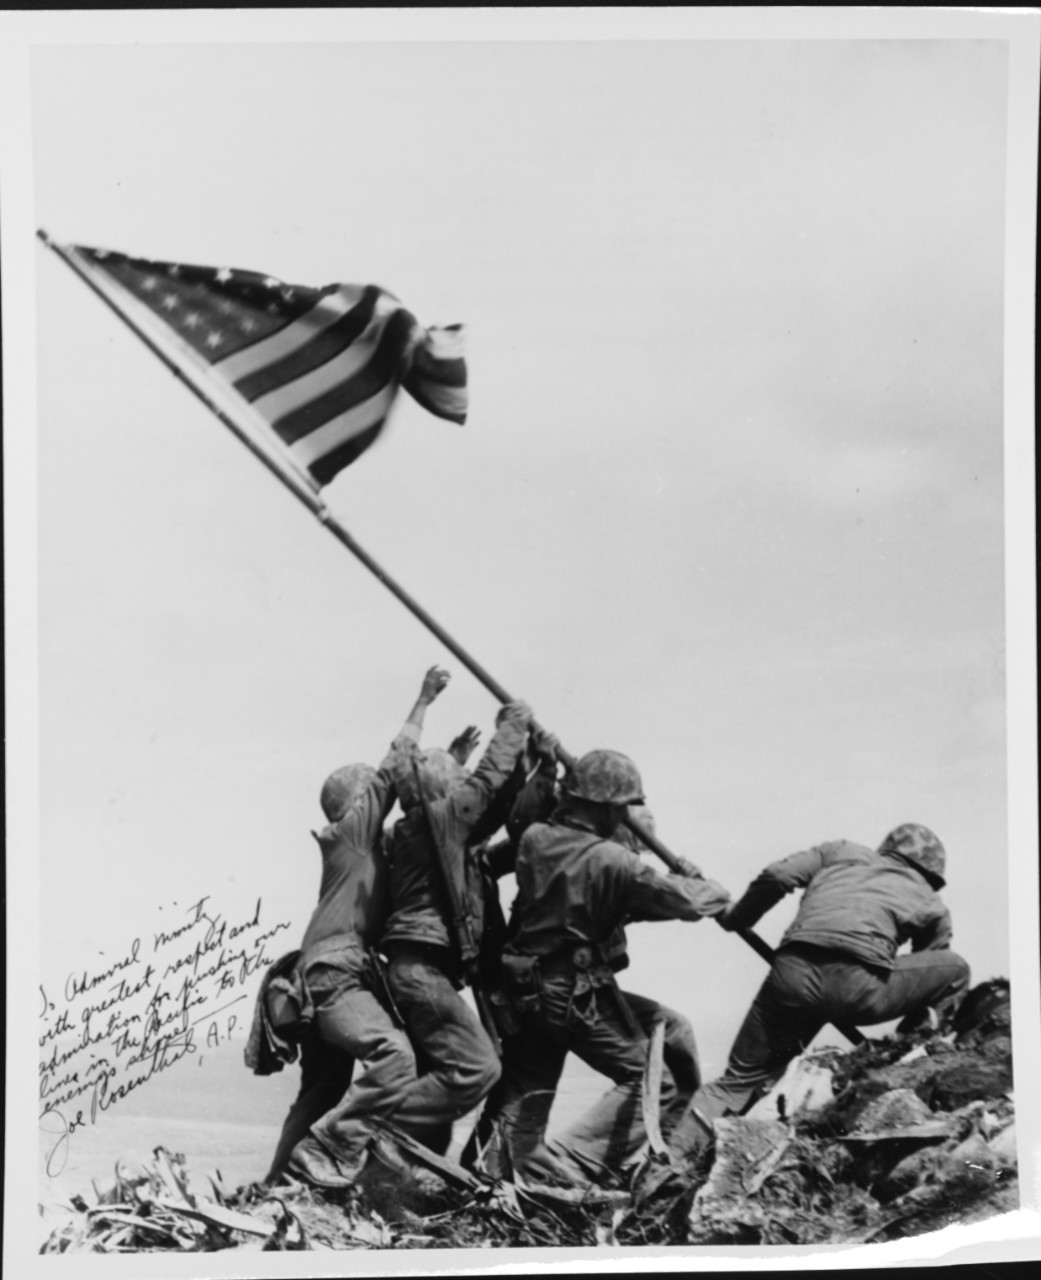 Planting of Stars and Stripes, Iwo Jima